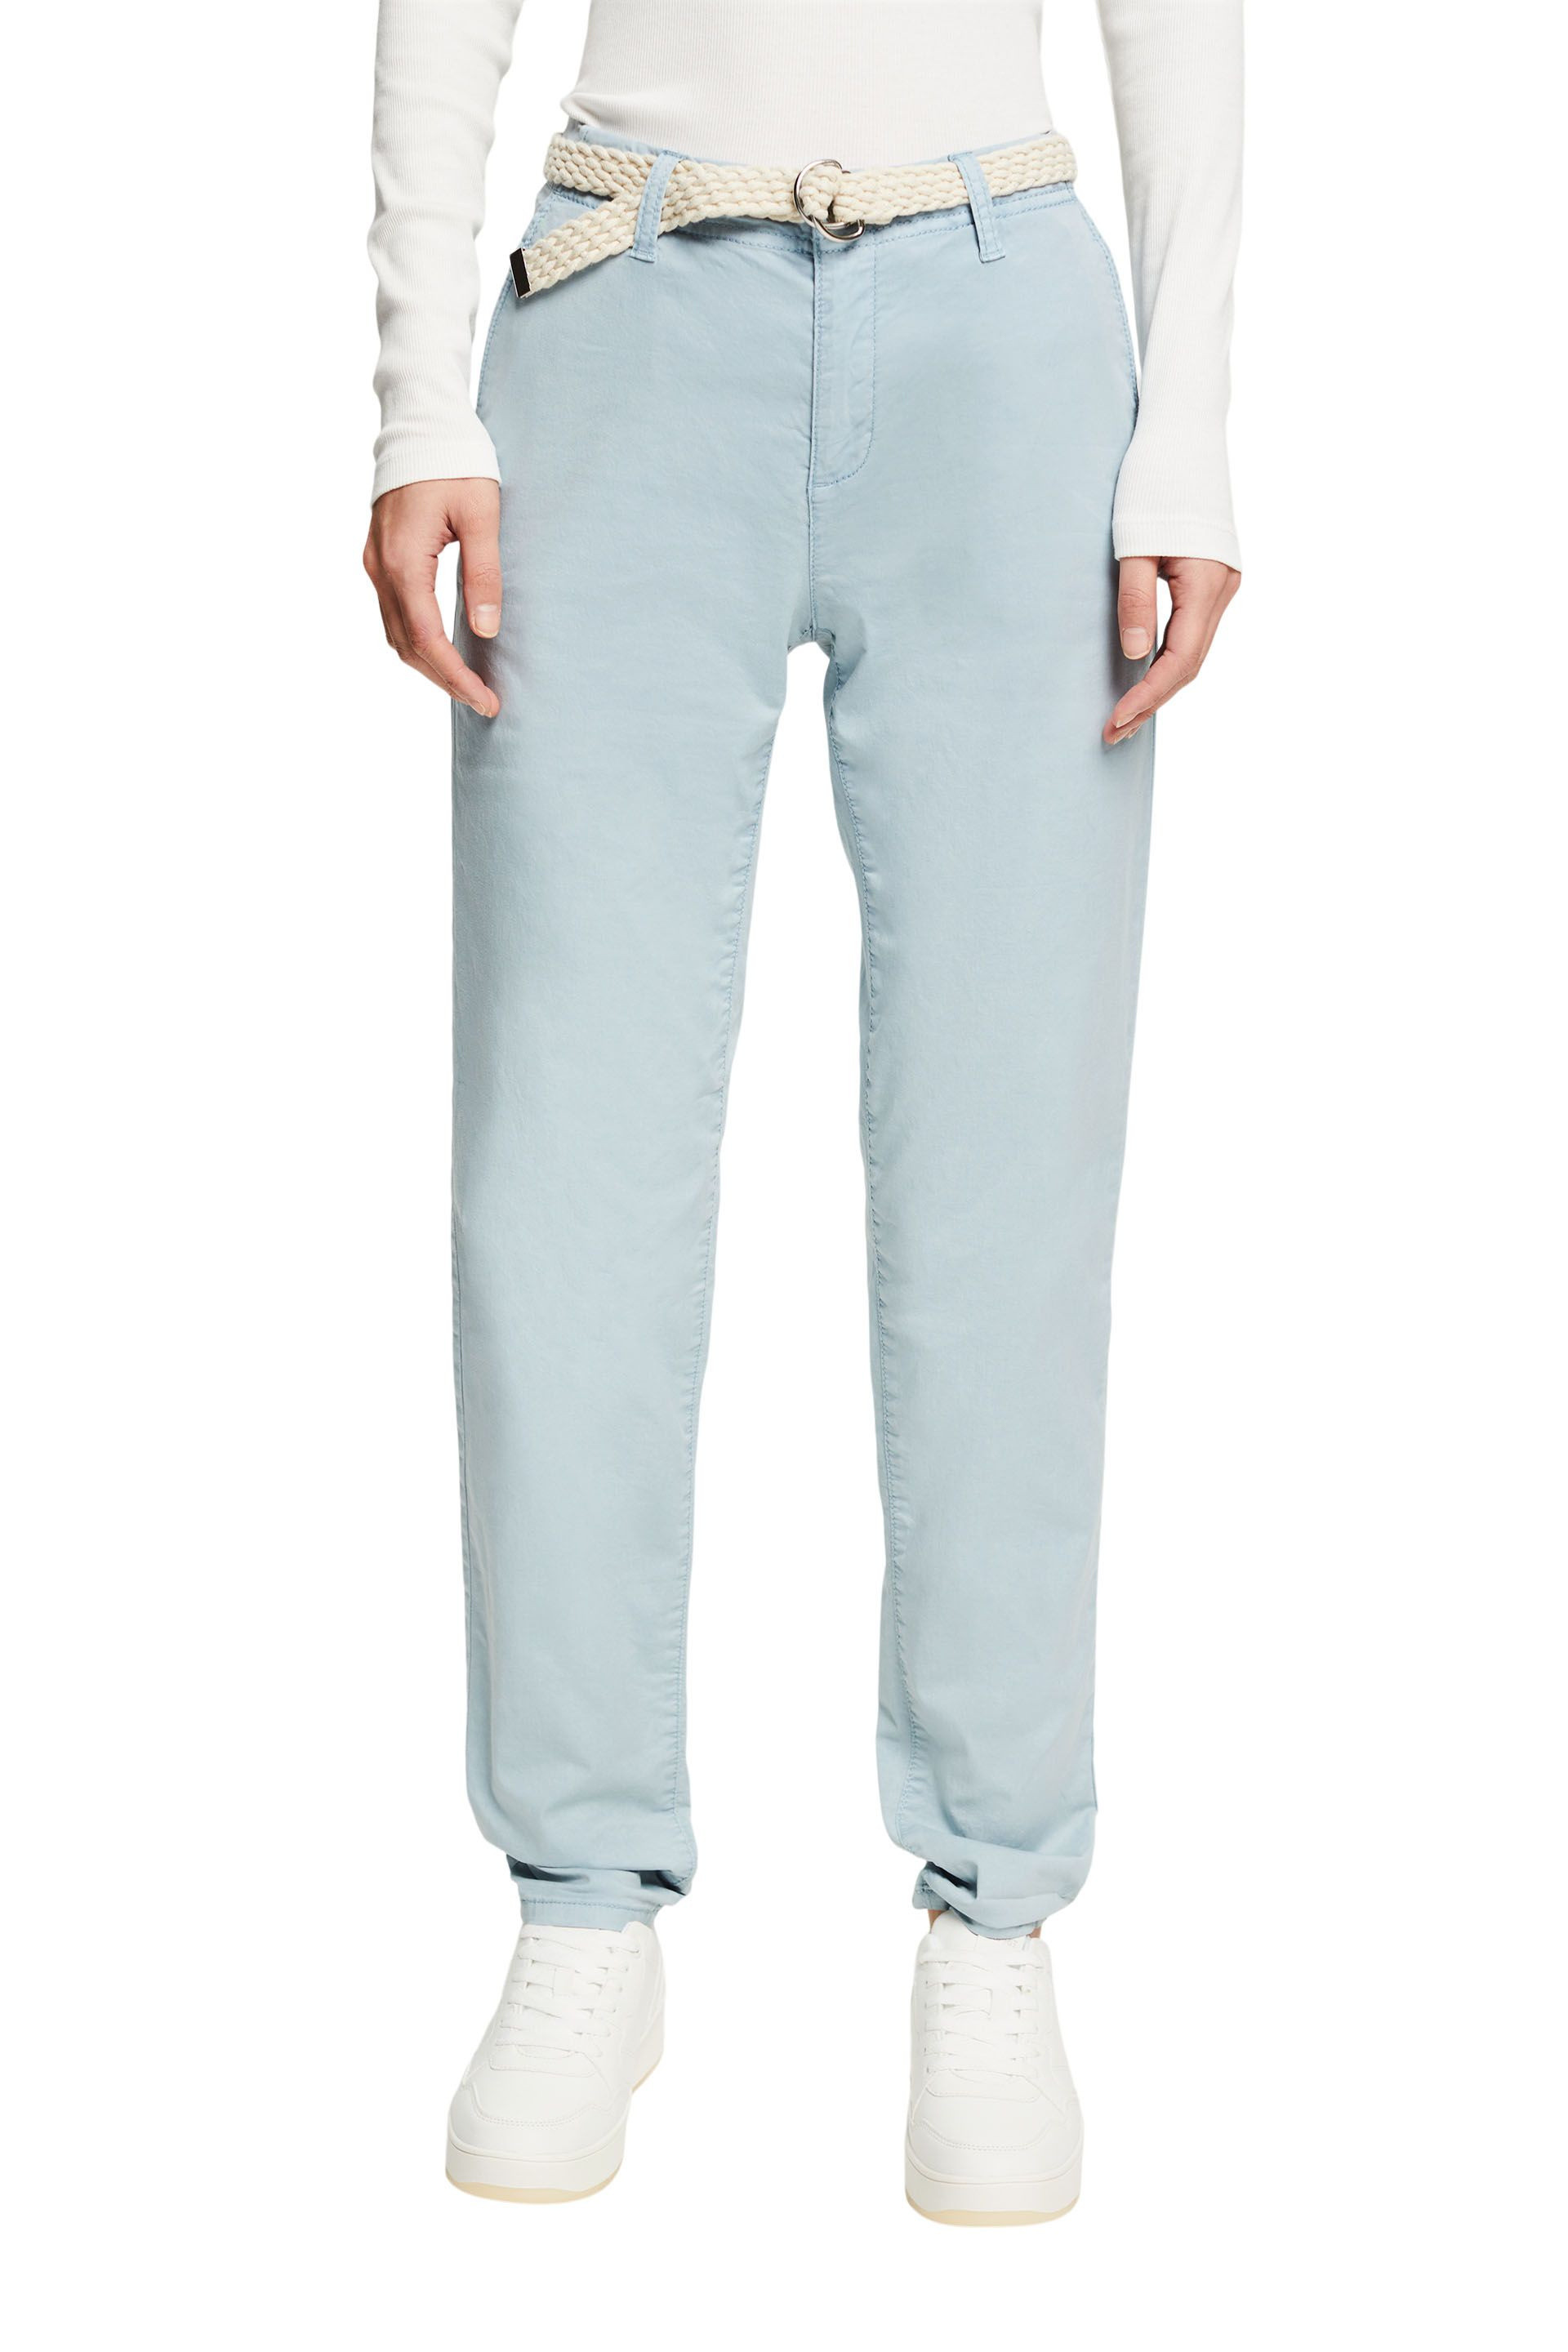 Pantaloni chino con cintura intrecciata, Azzurro celeste, large image number 1